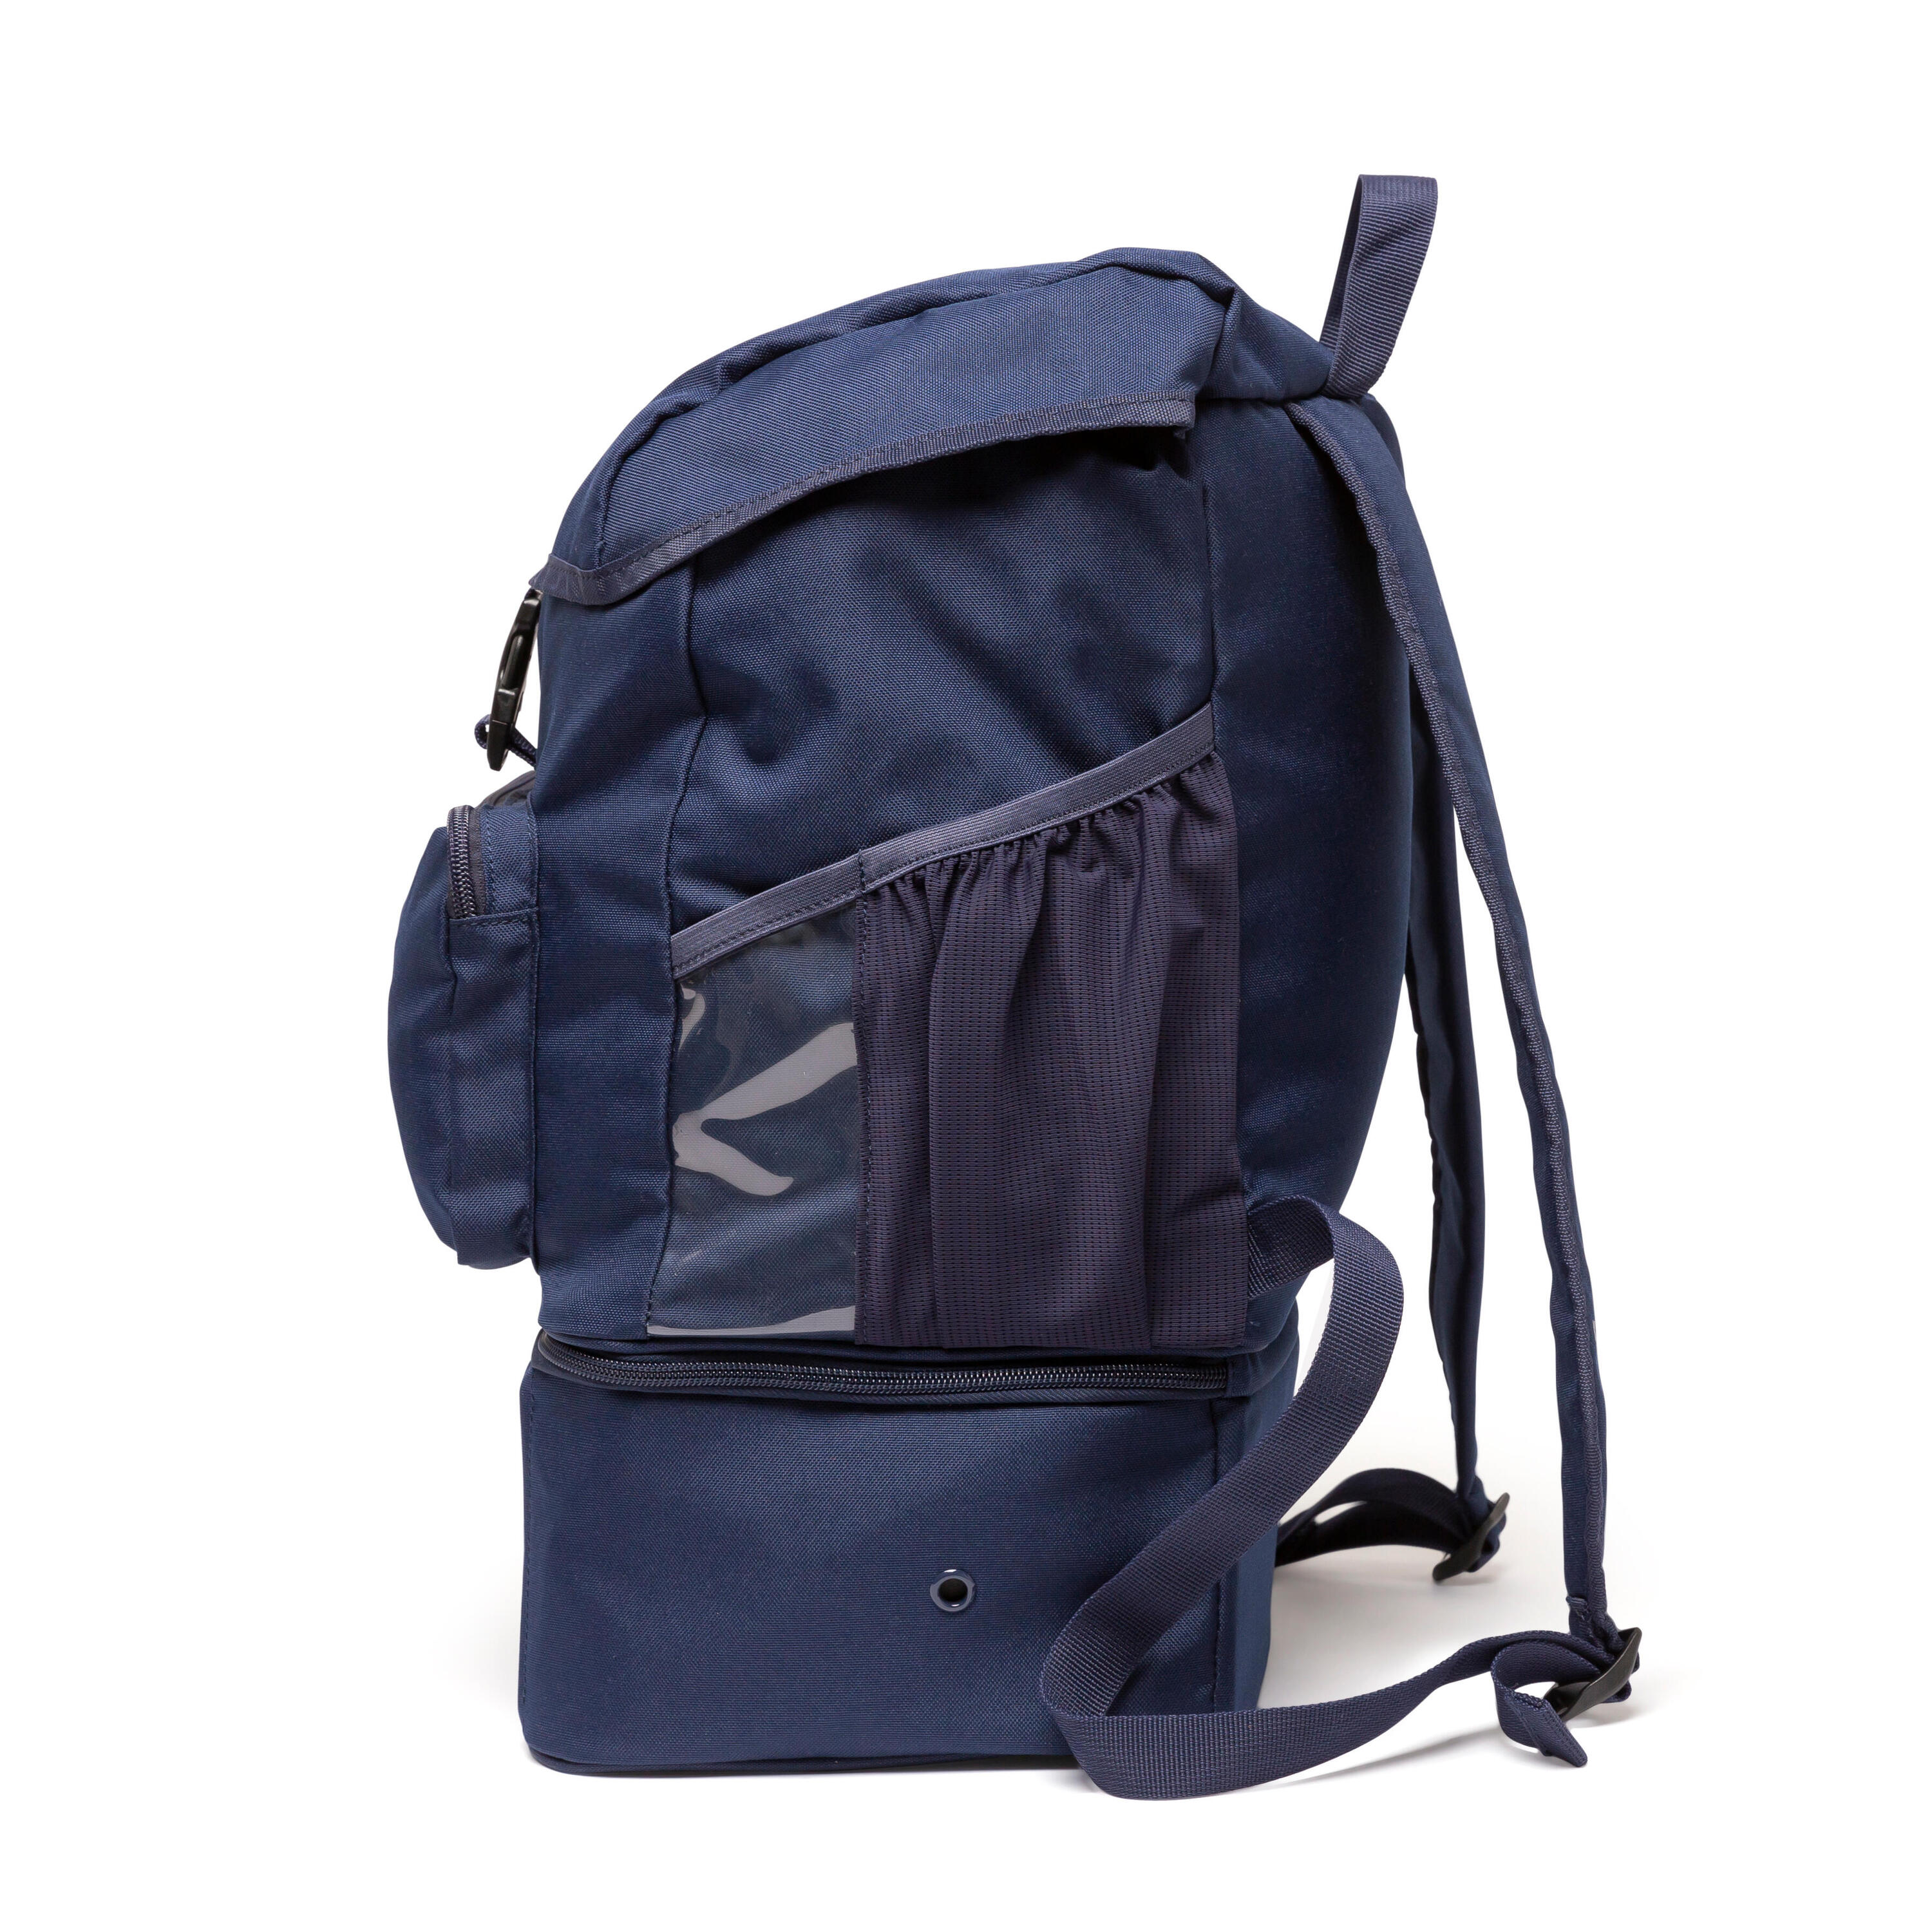 30 L Backpack Hardcase - Navy Blue 7/9